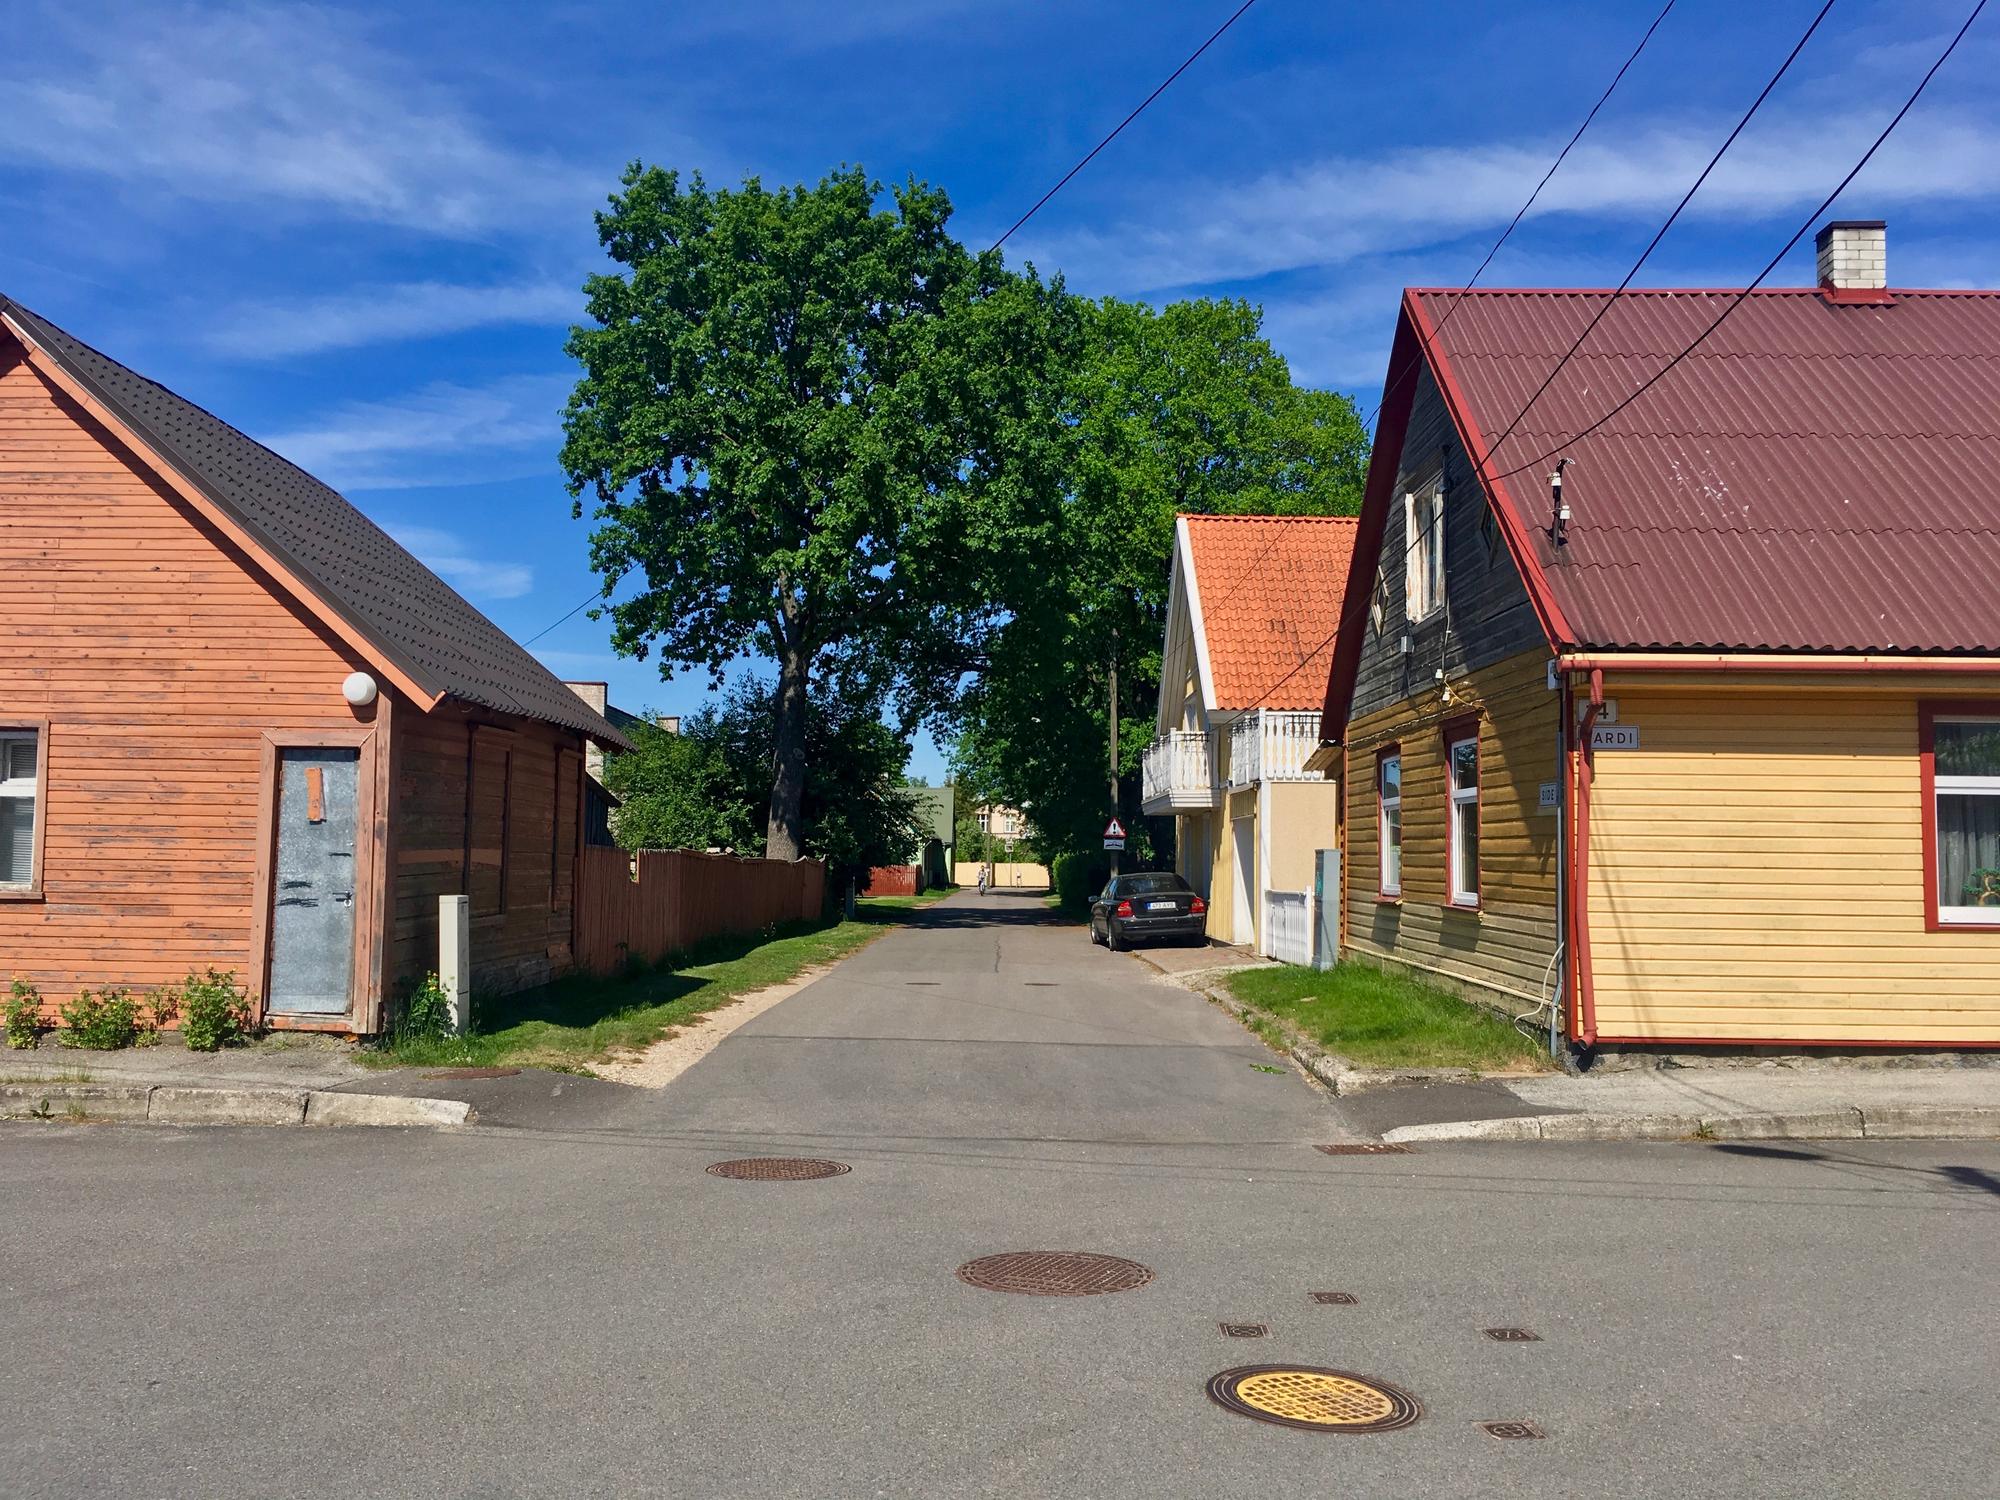 🇪🇪 Пярну, Эстония, май 2018.